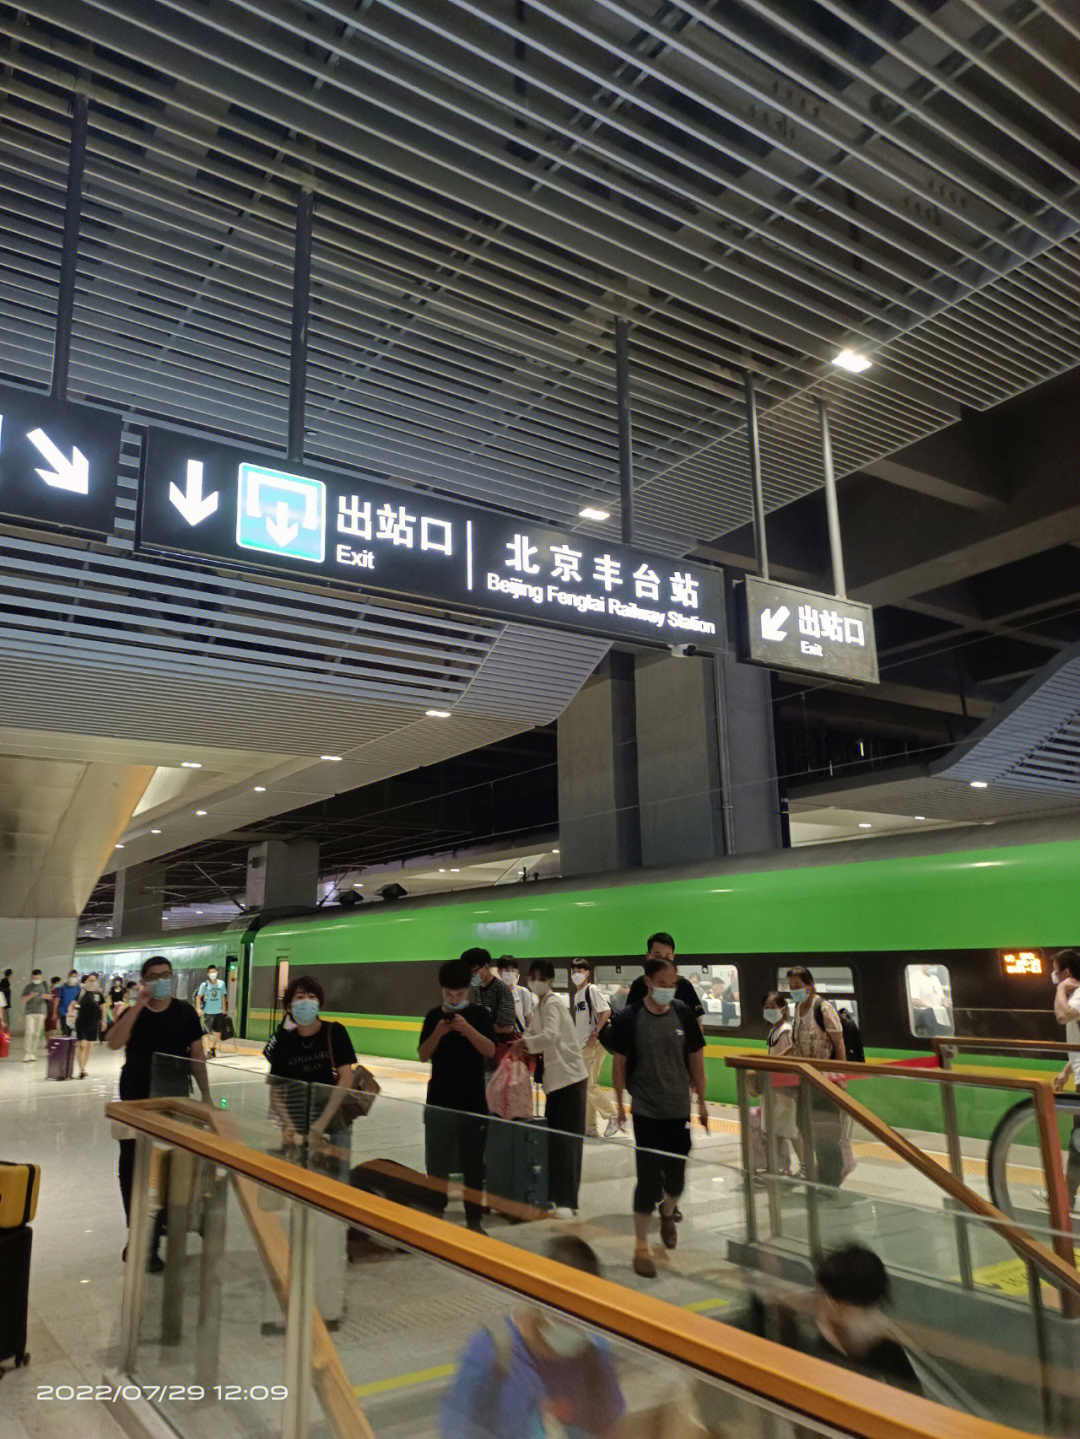 火车站出发,进站要查验北京健康宝绿码,48小时核酸检测报告